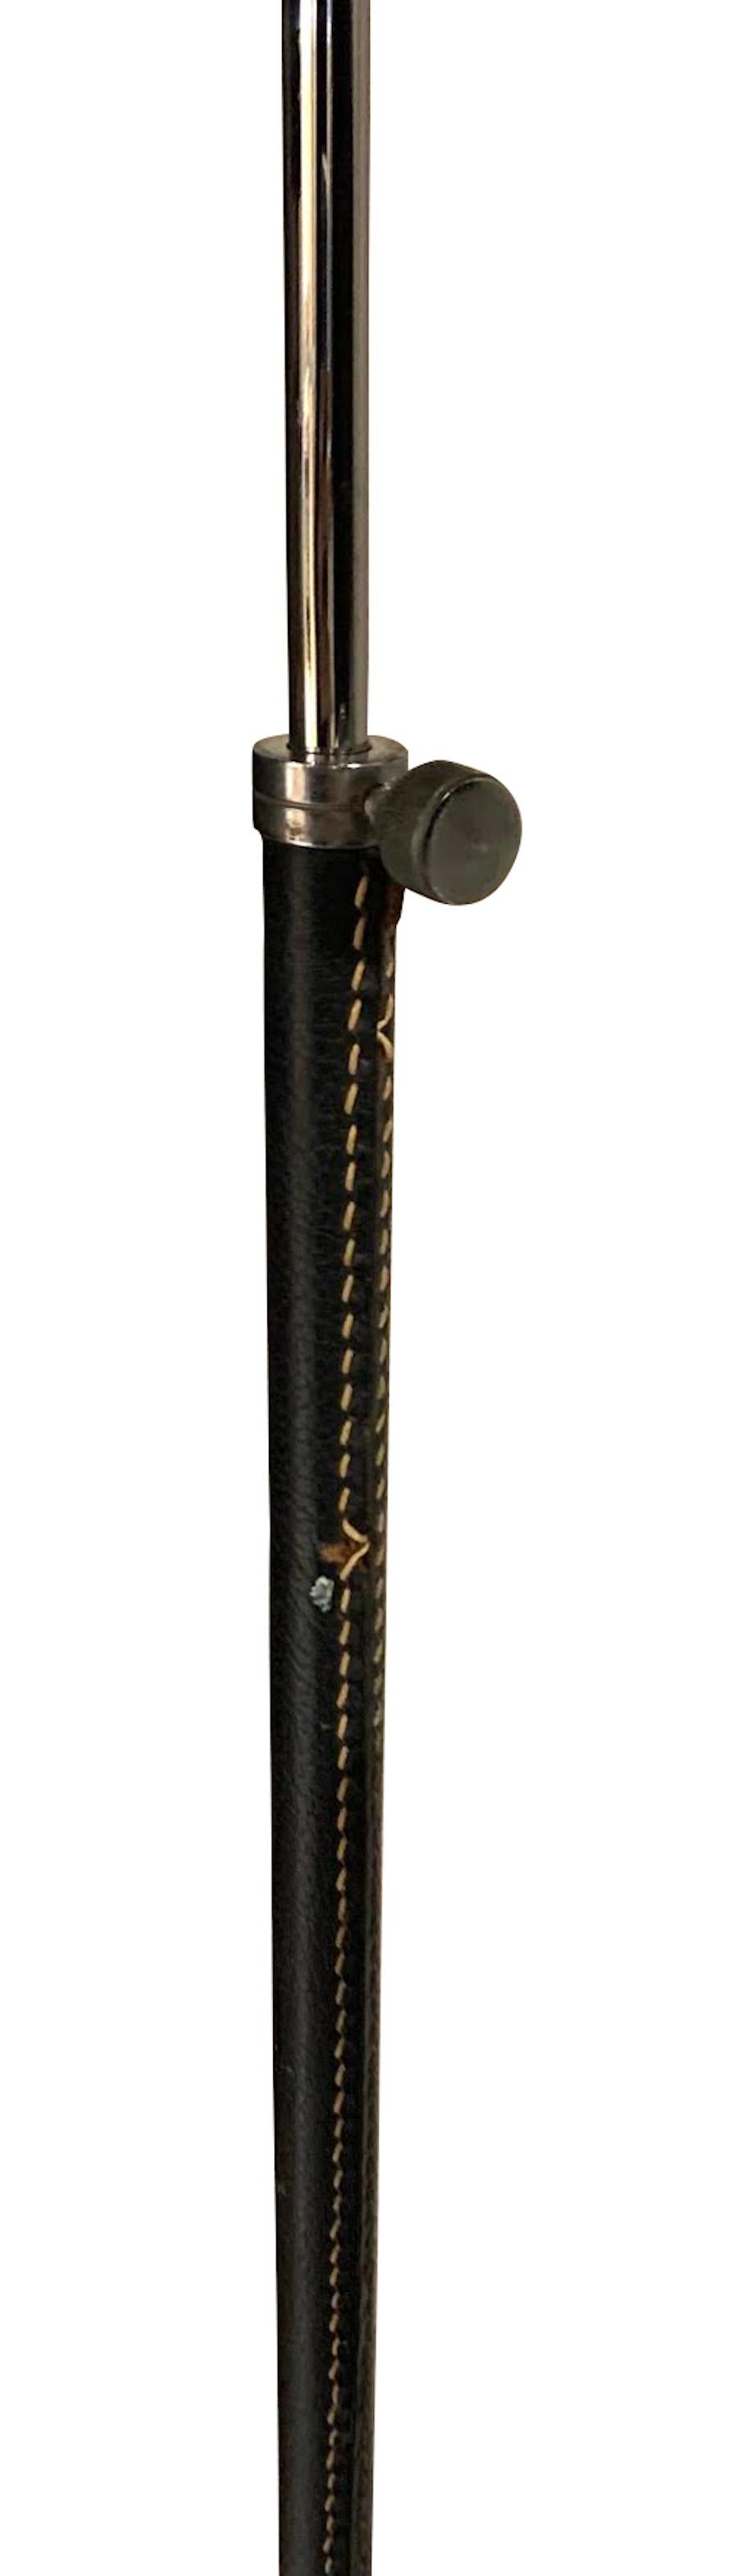 Stehlampe aus schwarzem spanischem Leder der 1960er Jahre mit naturfarbenen Kontrastnähten.
Dekorativer dreibeiniger Fuß aus Silber.
Höhe der Leuchte 47